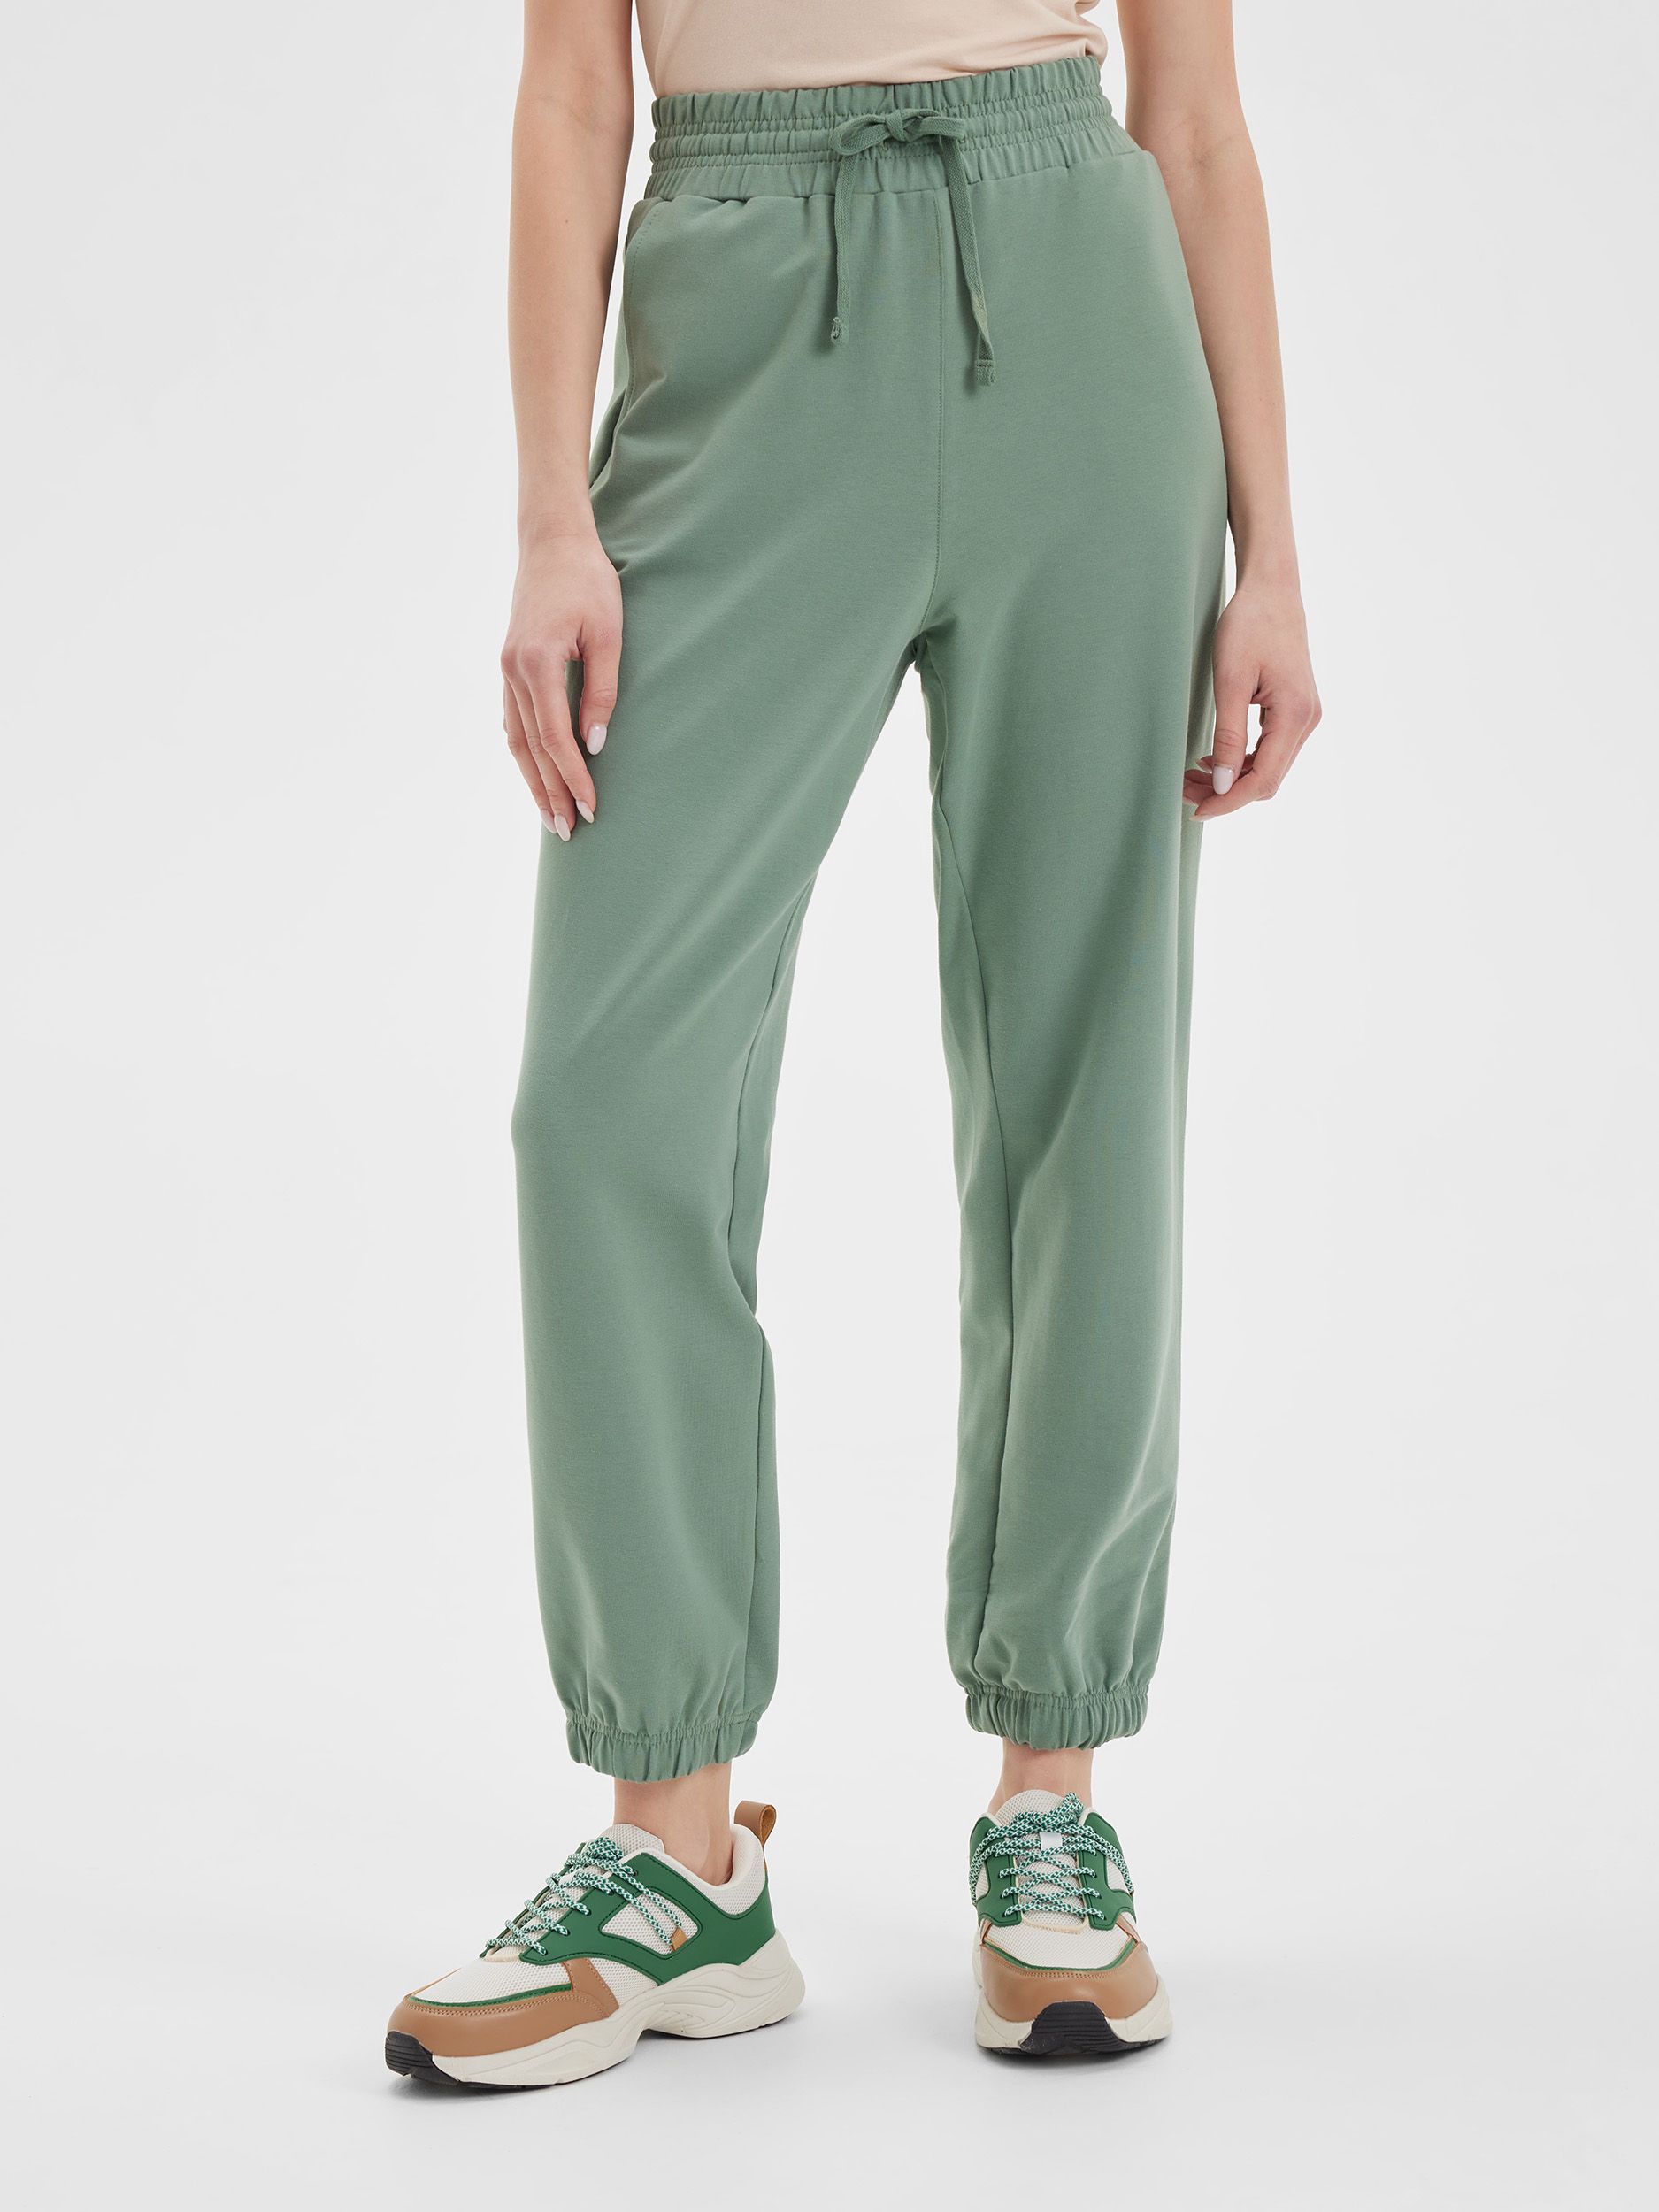 Спортивные брюки женские LAINA S21-W1-754 зеленые 46 RU